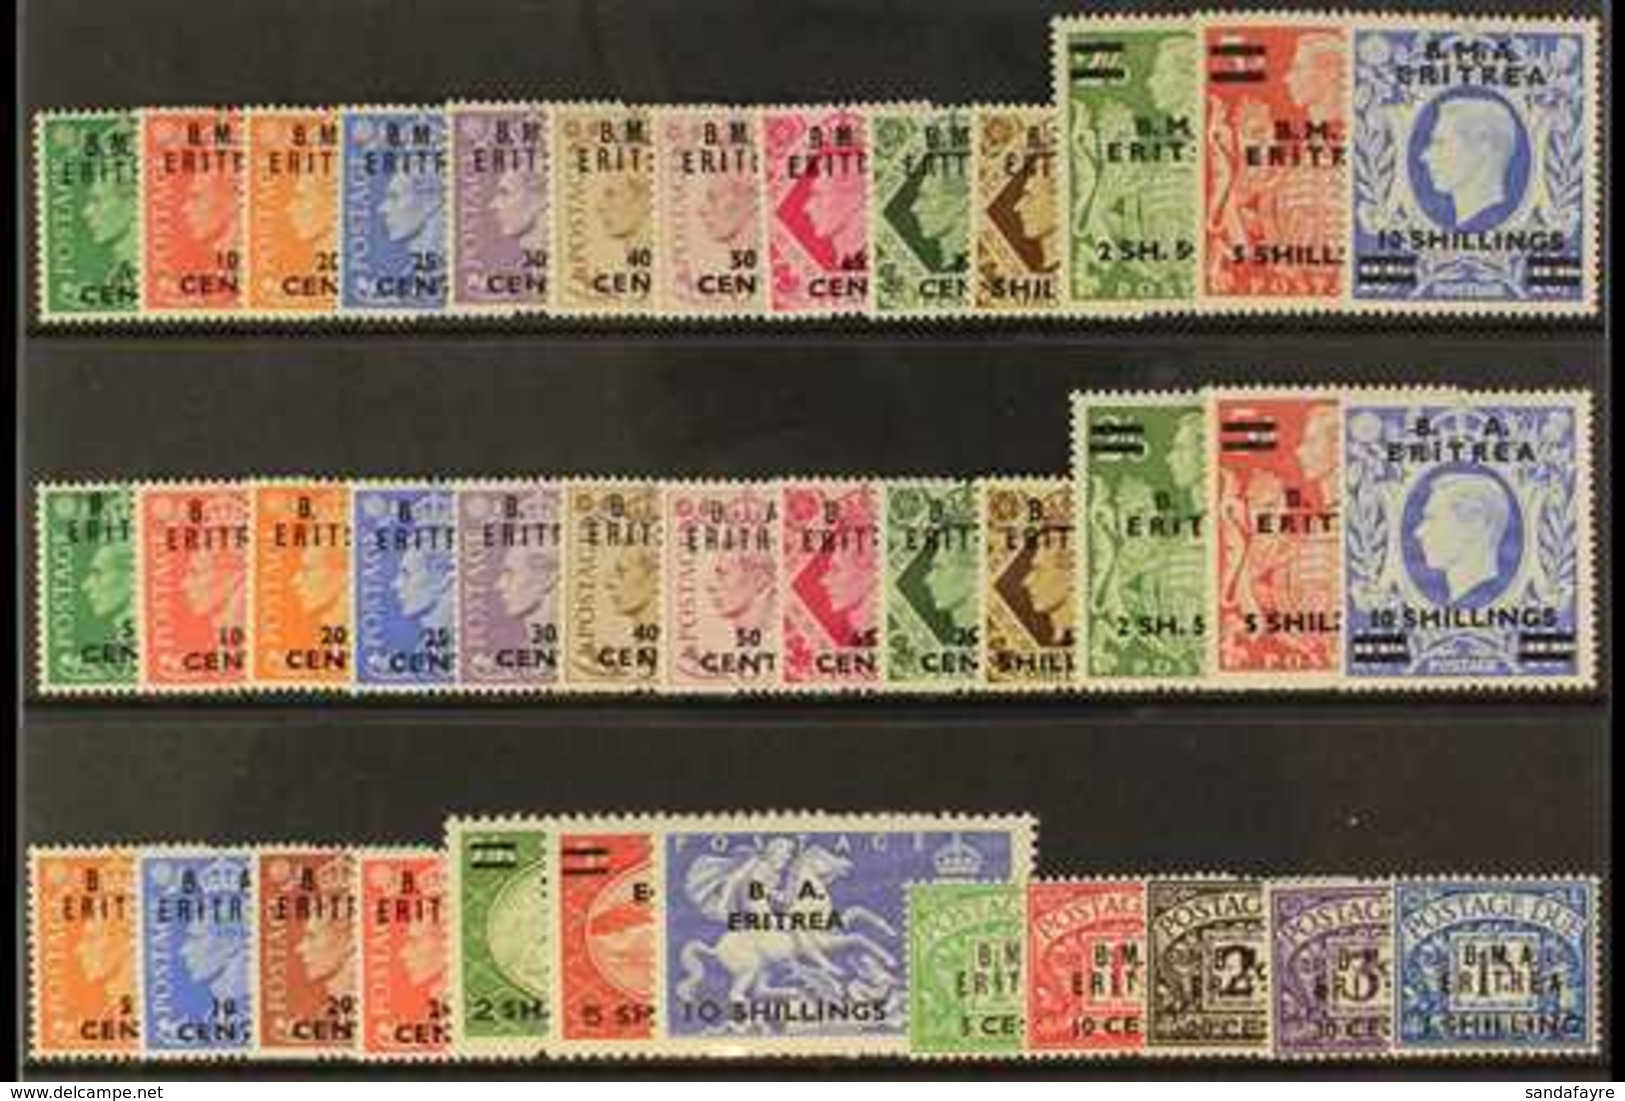 ERITREA  1948-51 MINT COLLECTION Of Complete Sets On A Stock Card, Inc 1948-49 Set, 1950 Set, 1951 Set & 1948 Dues Set.  - Afrique Orientale Italienne